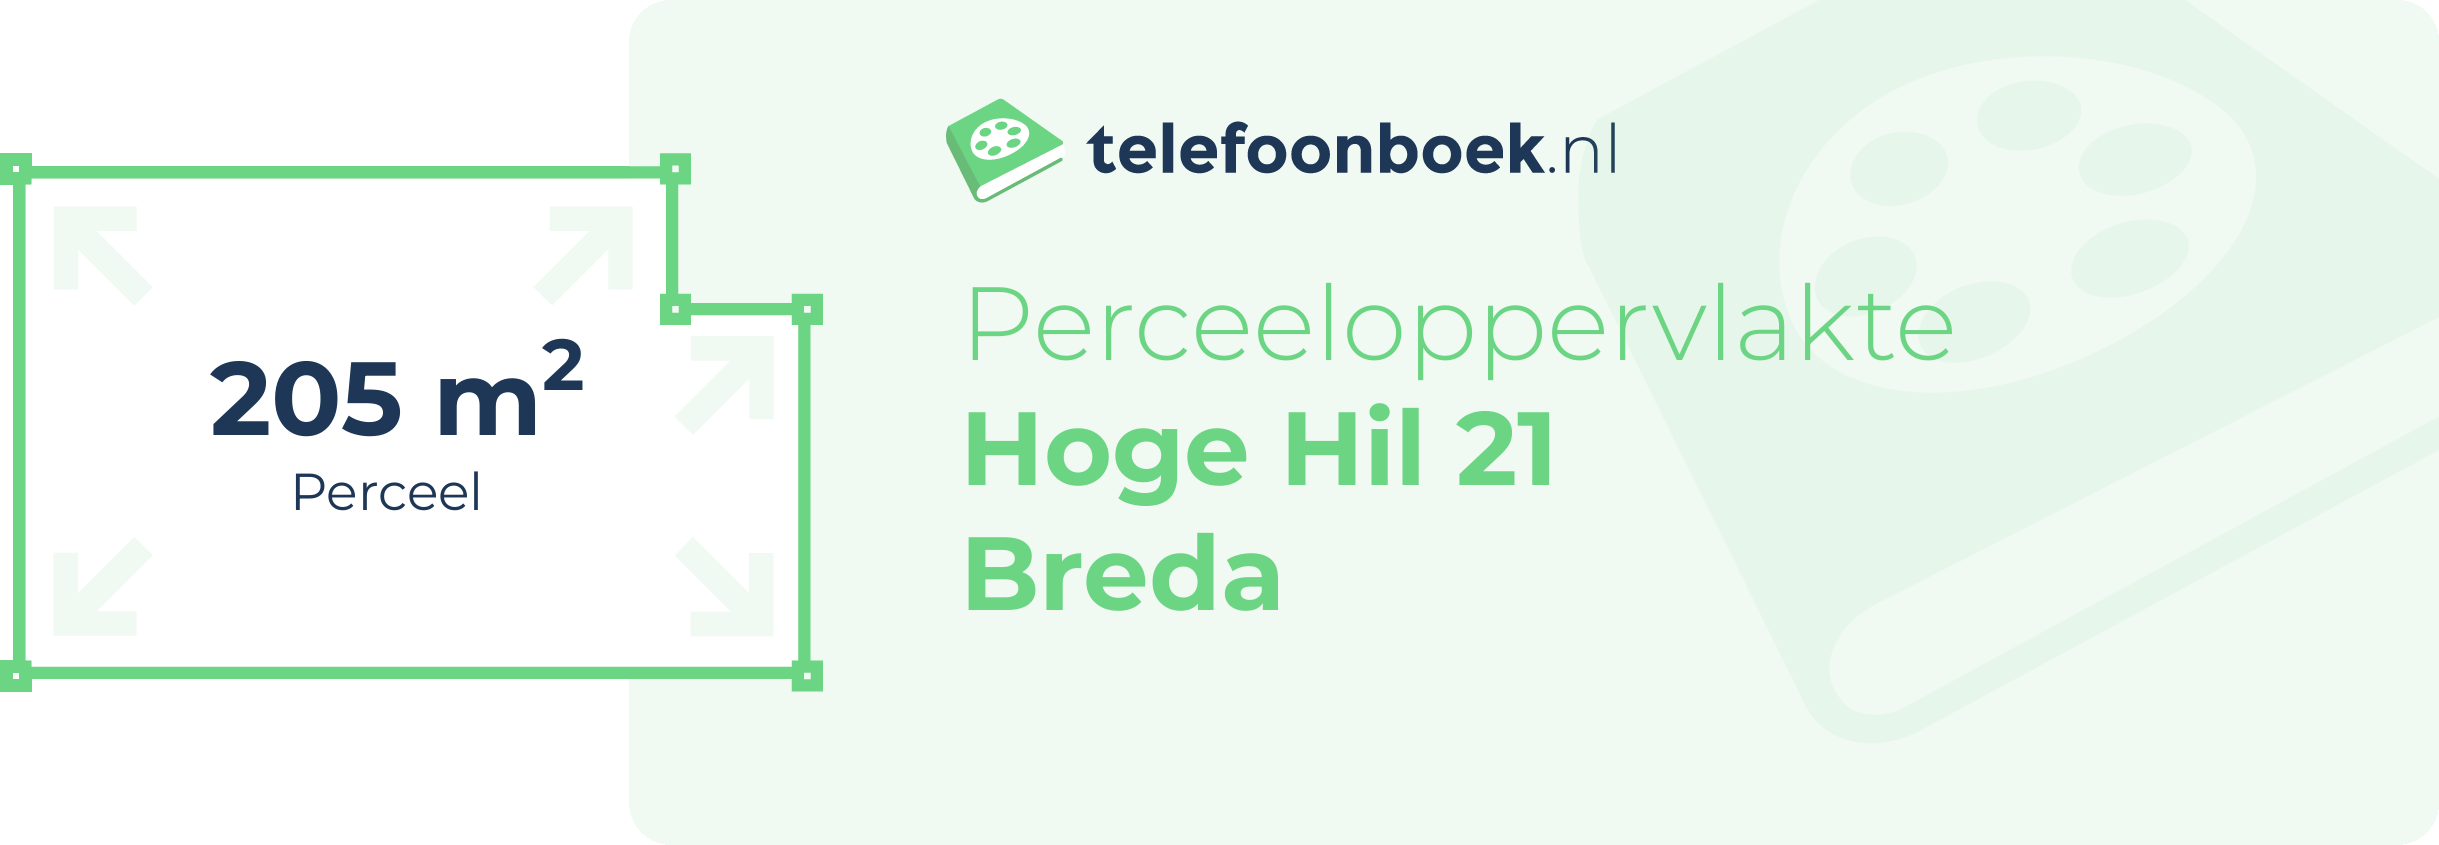 Perceeloppervlakte Hoge Hil 21 Breda